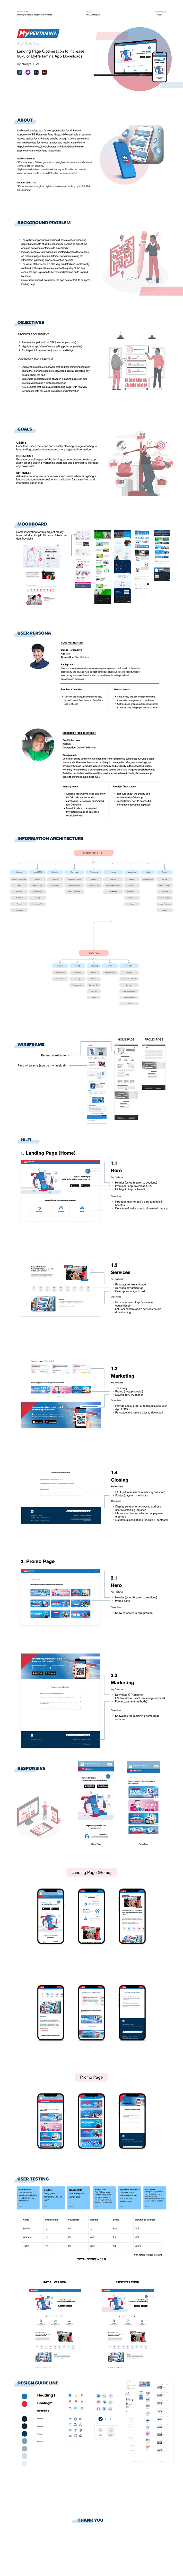 uiux ui design uiuxdesign landing page mobileapp Marketing Design graphic brand identity visual product design 